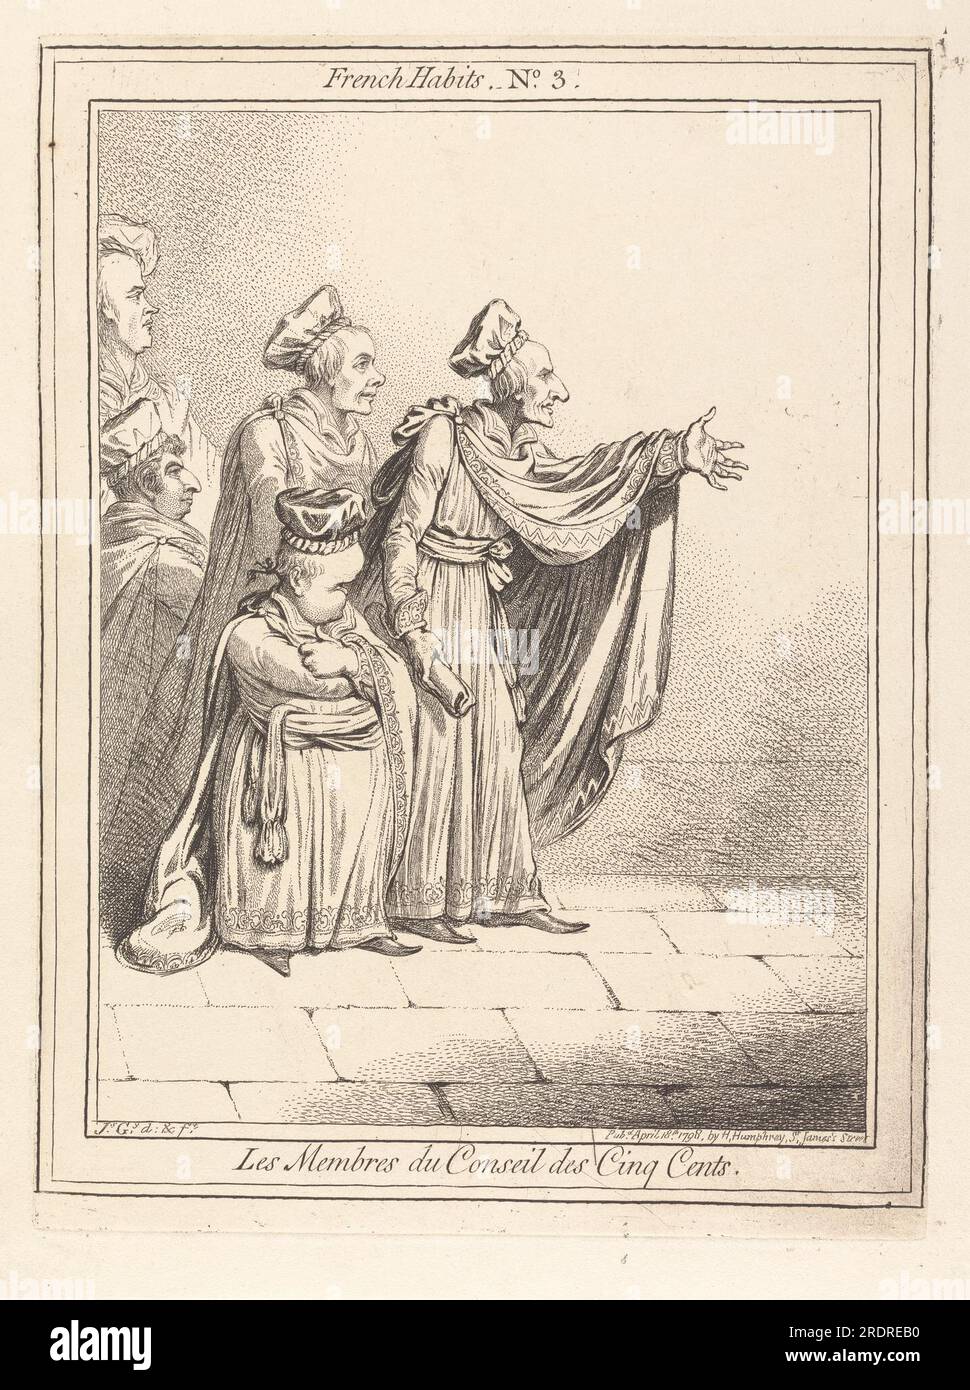 Les Membres du Conseil des Cinq Cents. French Habits No. 3 1798 by James Gillray Stock Photo